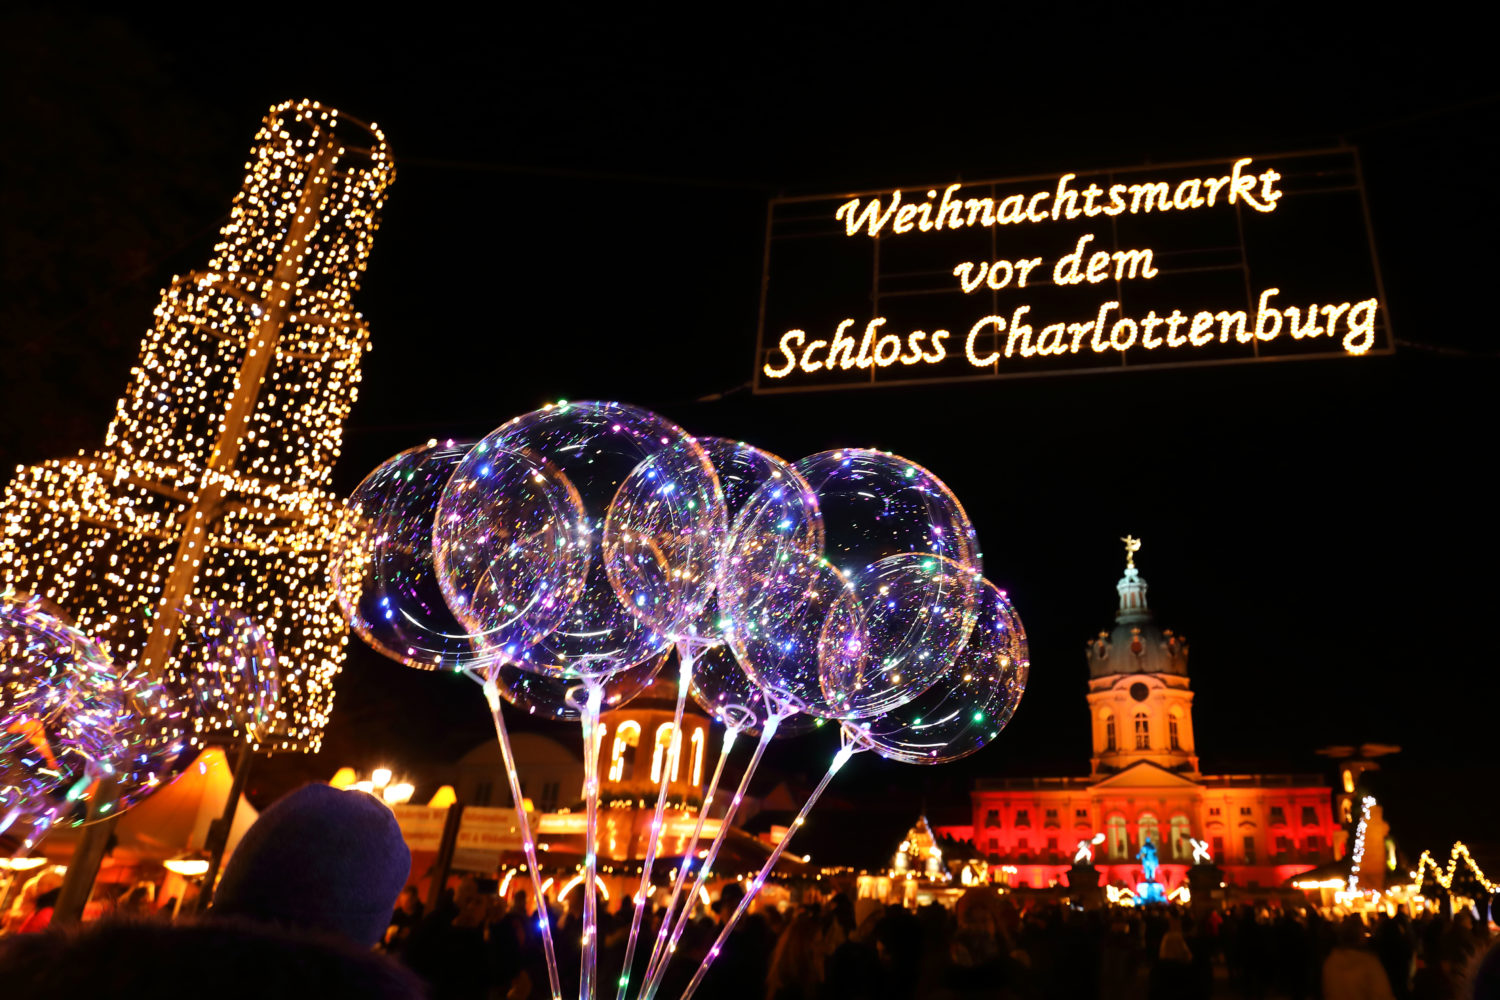 weihnachtsmarkt charlottenburg Für die Ausstellenden und die Verantwortlichen ist das Risiko zu hoch, den Weihnachtsmarkt vor dem Schloss Charlottenburg aufzubauen.